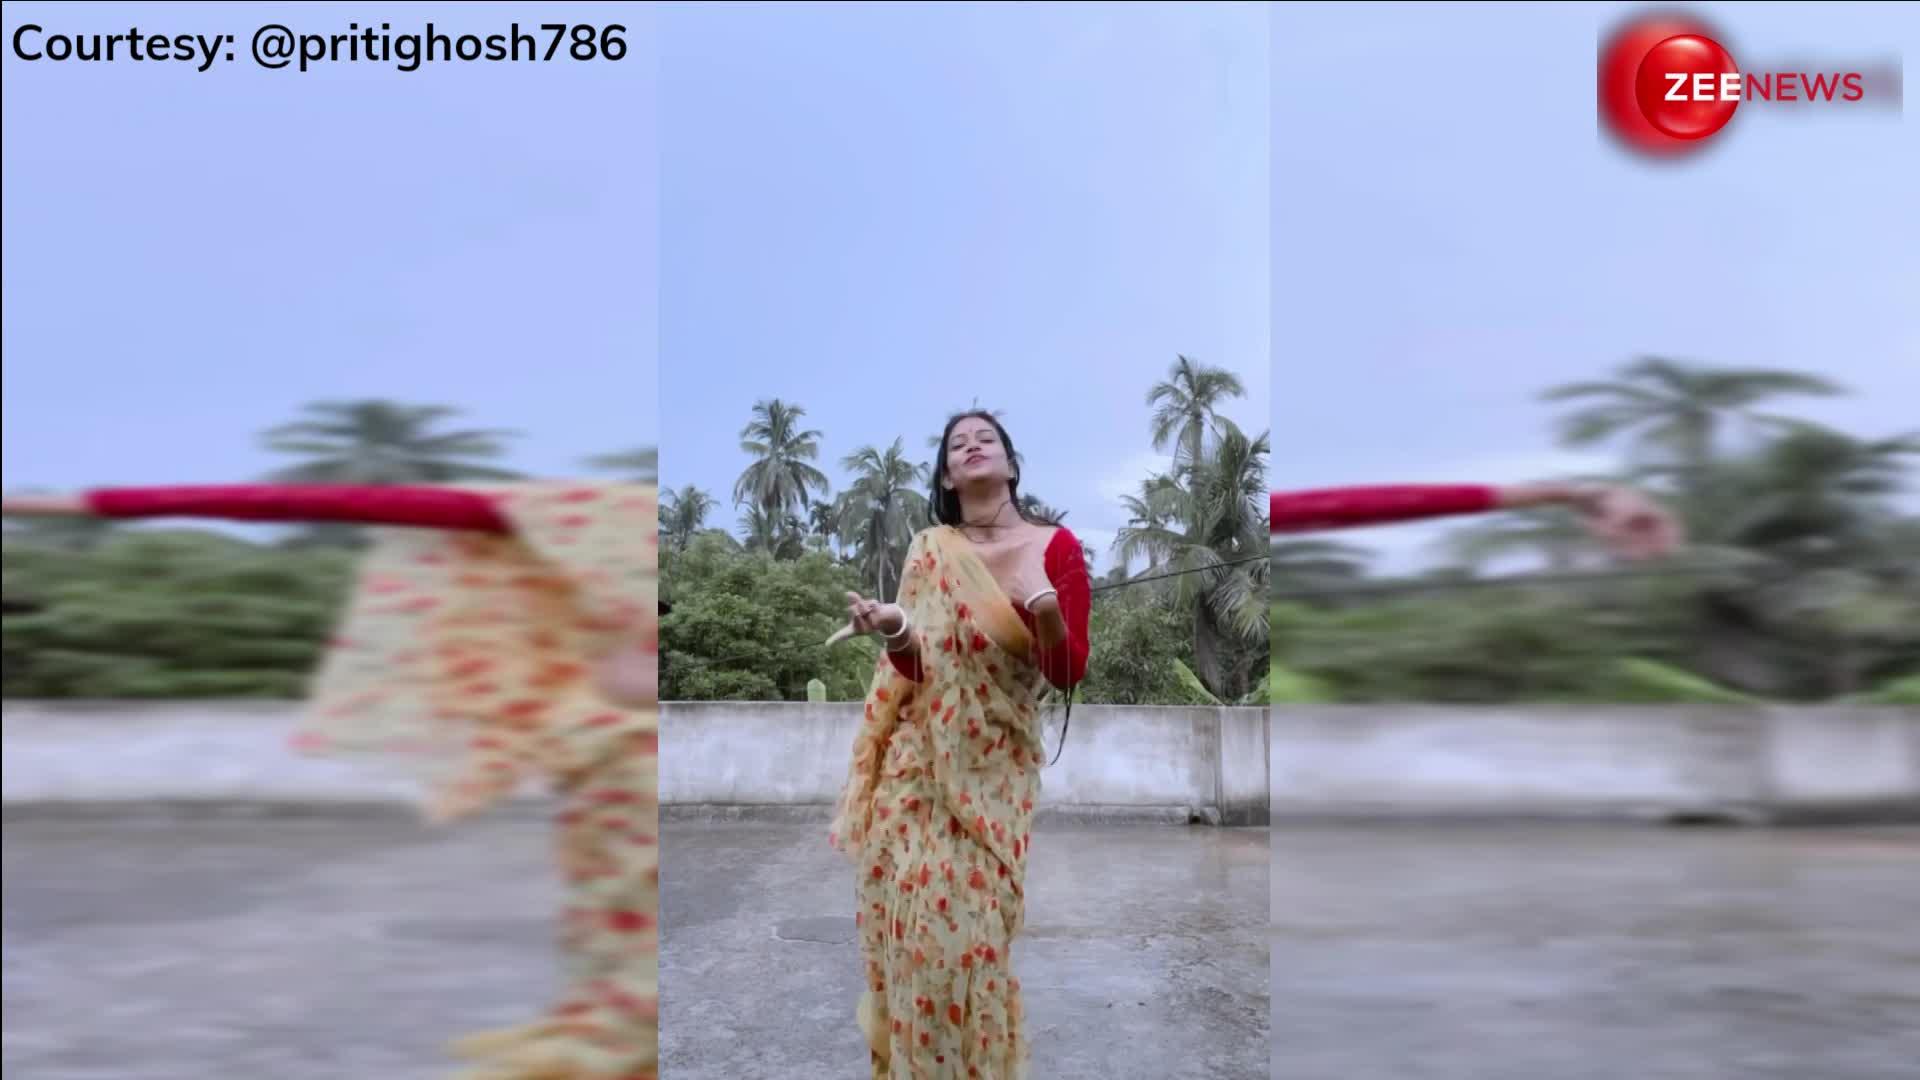 माधुरी दीक्षित के गाने 'Koi Ladki Hai' पर साड़ी पहन जमकर नाची लड़की, बारिश में गजब के डांस मूव्स देख पब्लिक हुई फैन